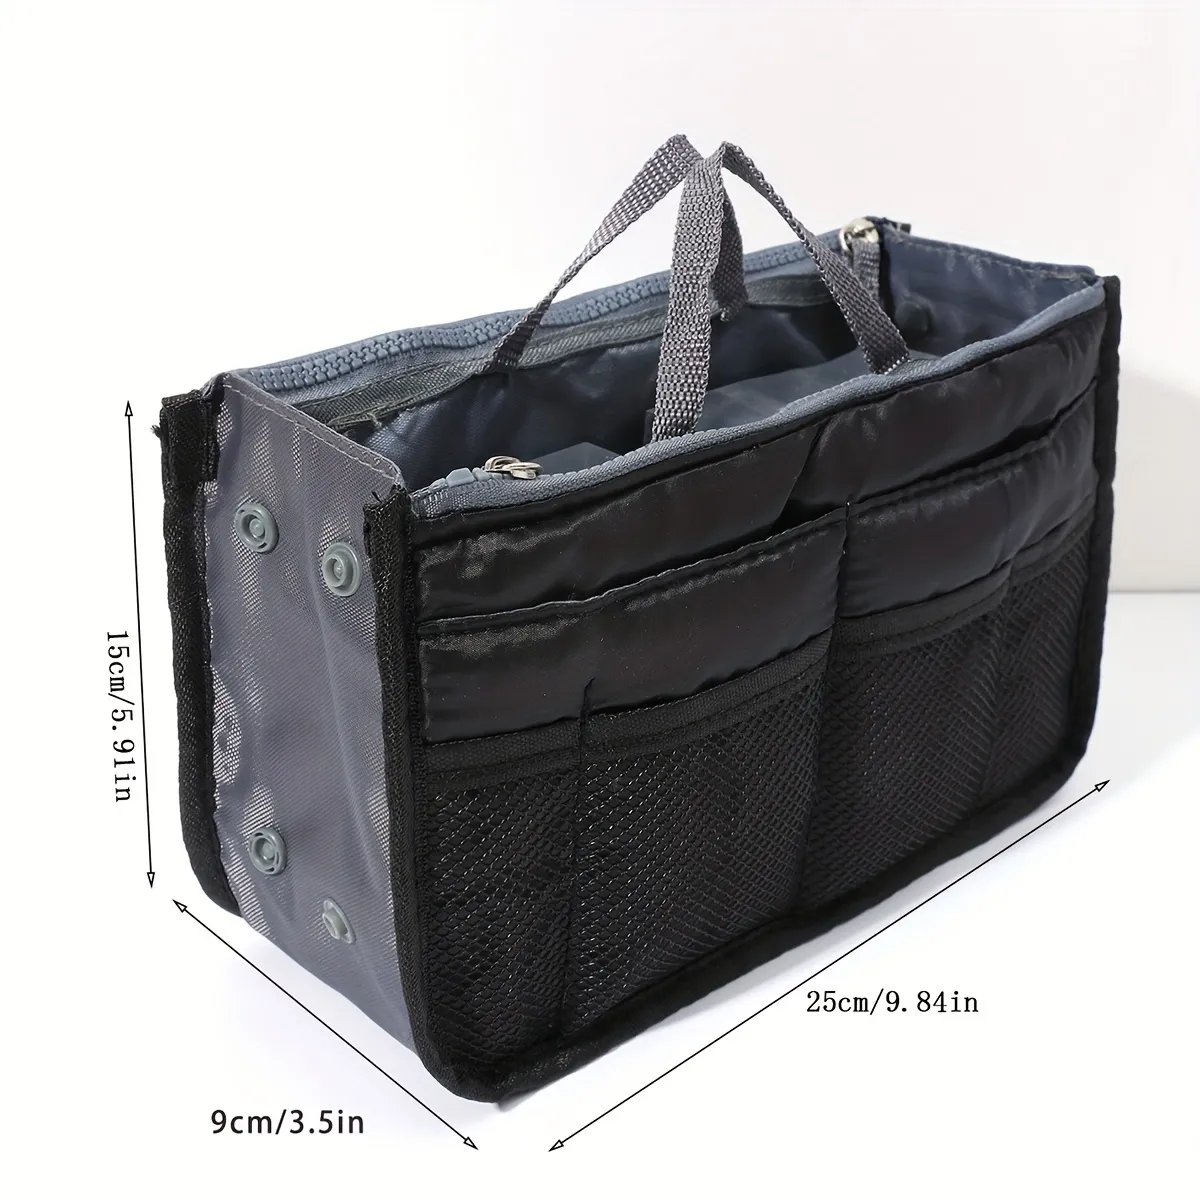 Purse Insert Storage Bag, Versatile Travel Organizer Bag Insert